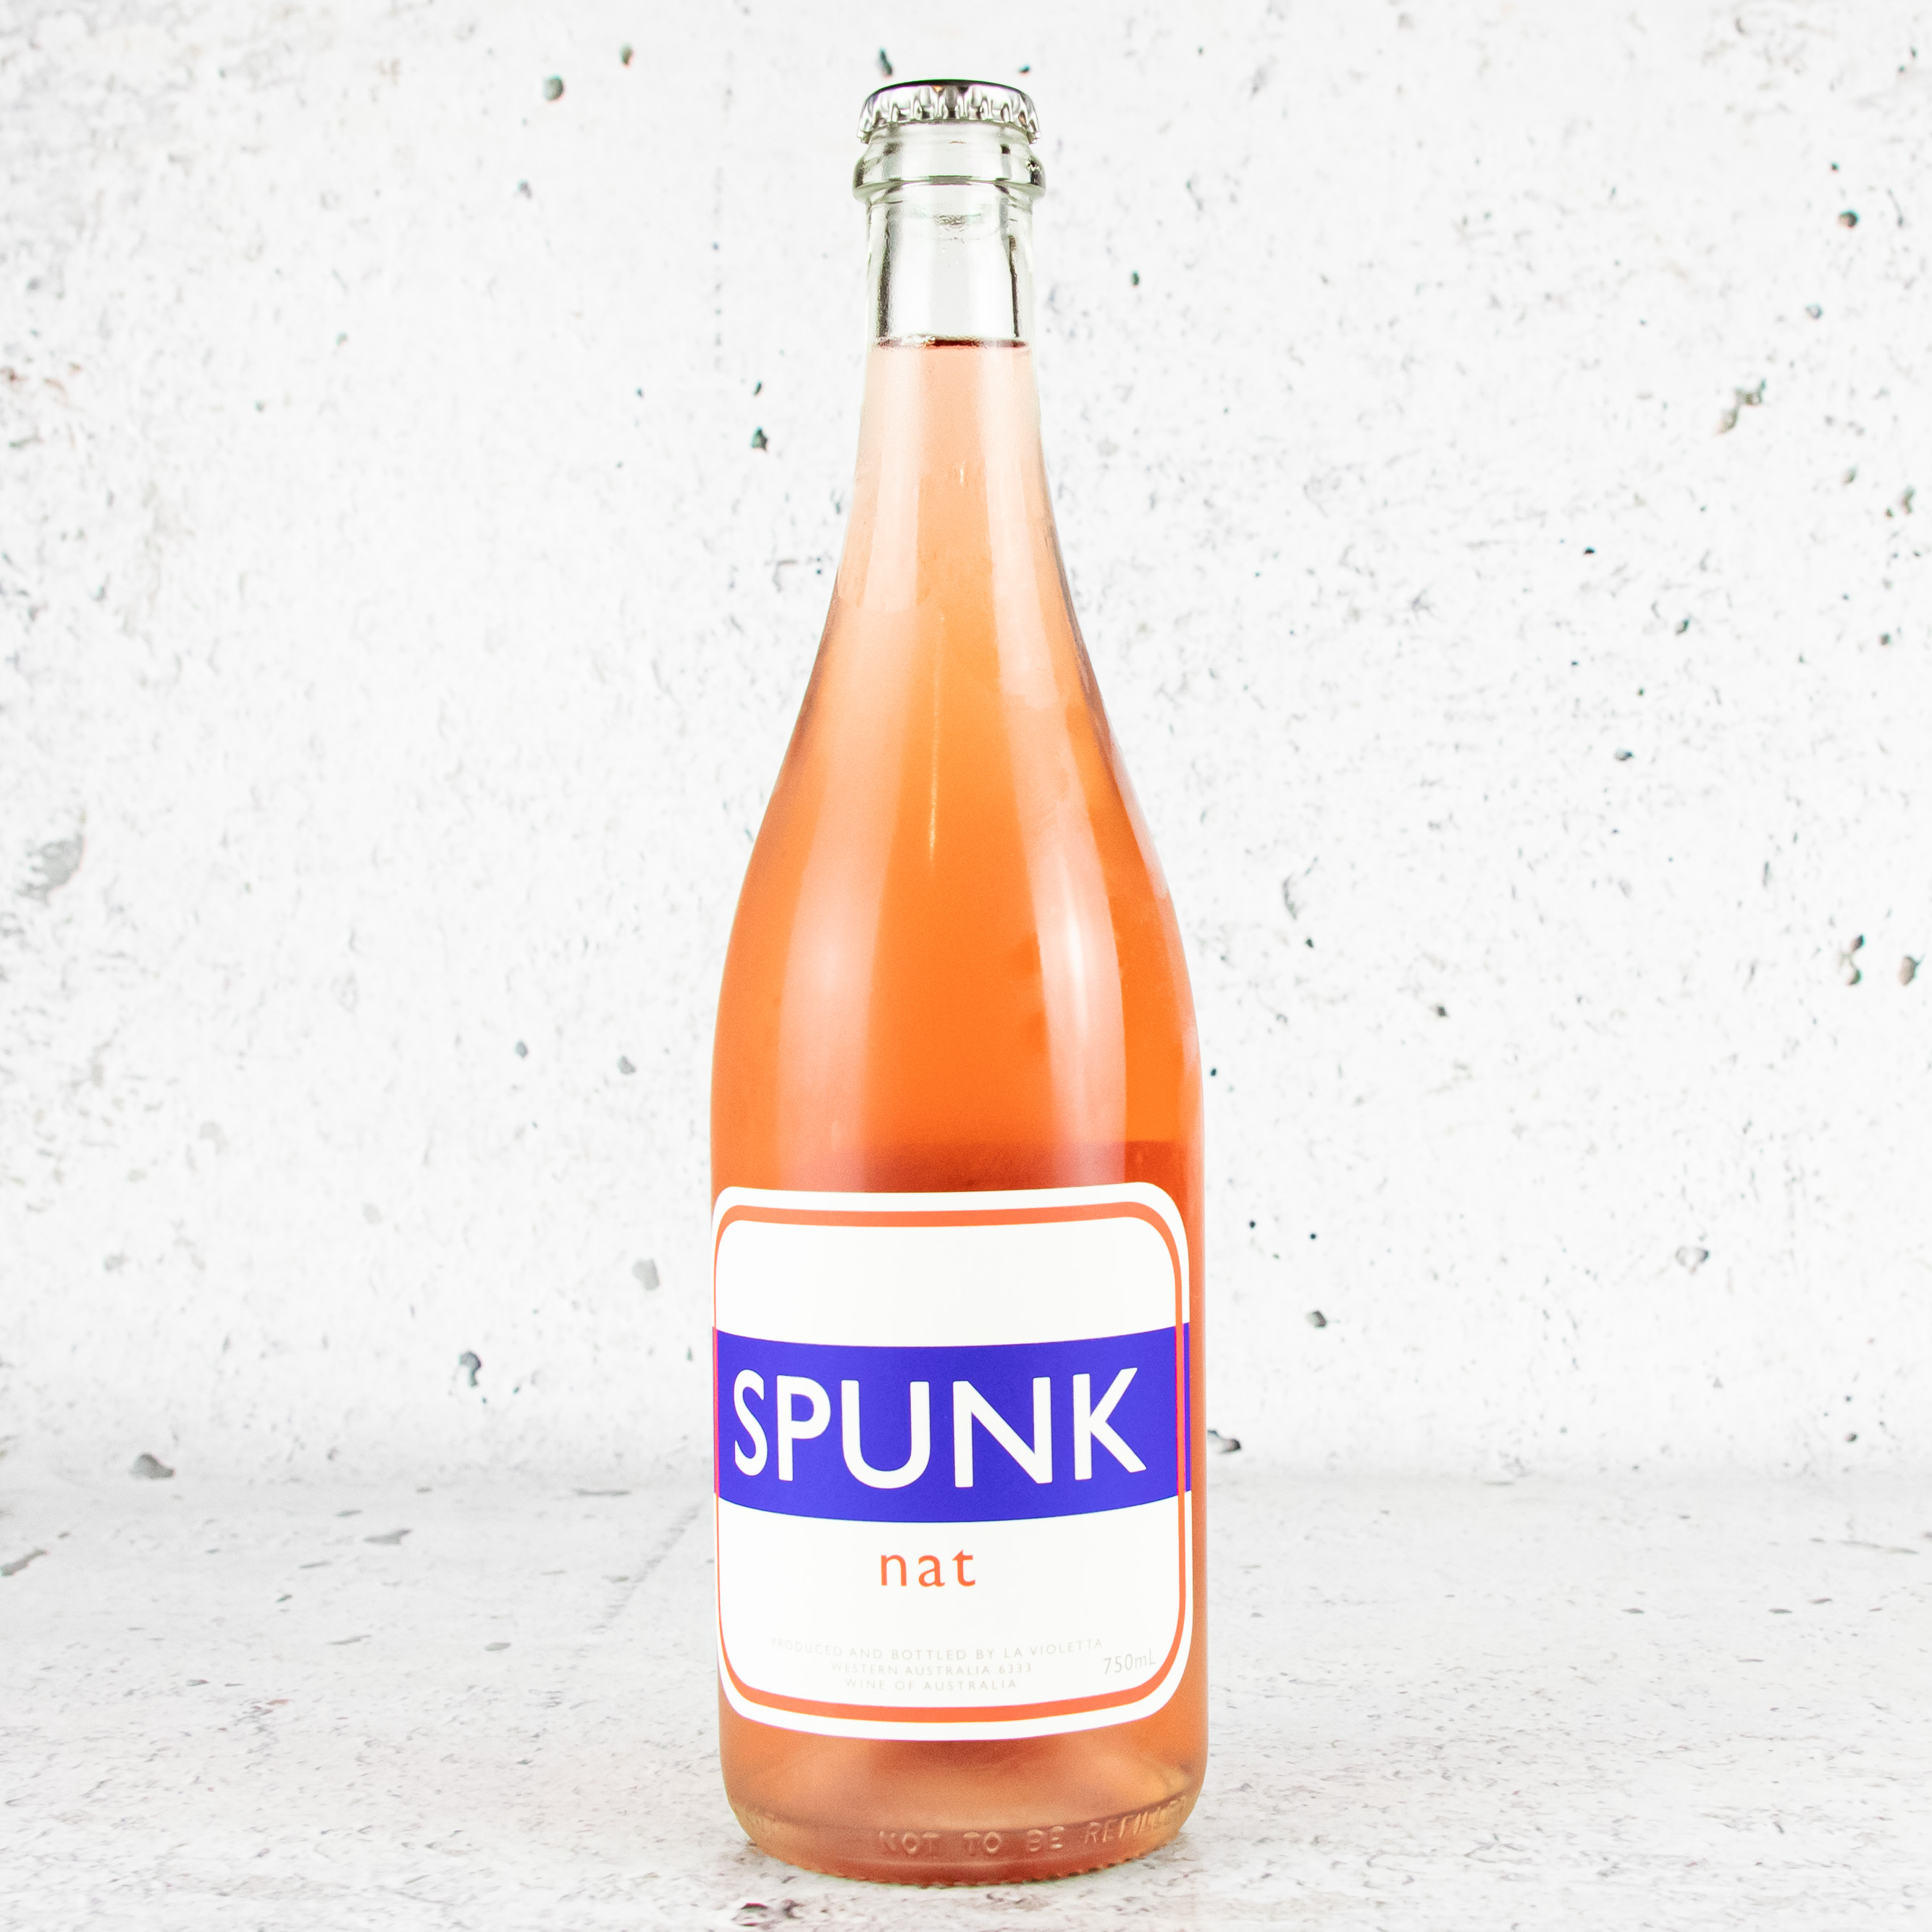 spunk in a bottle